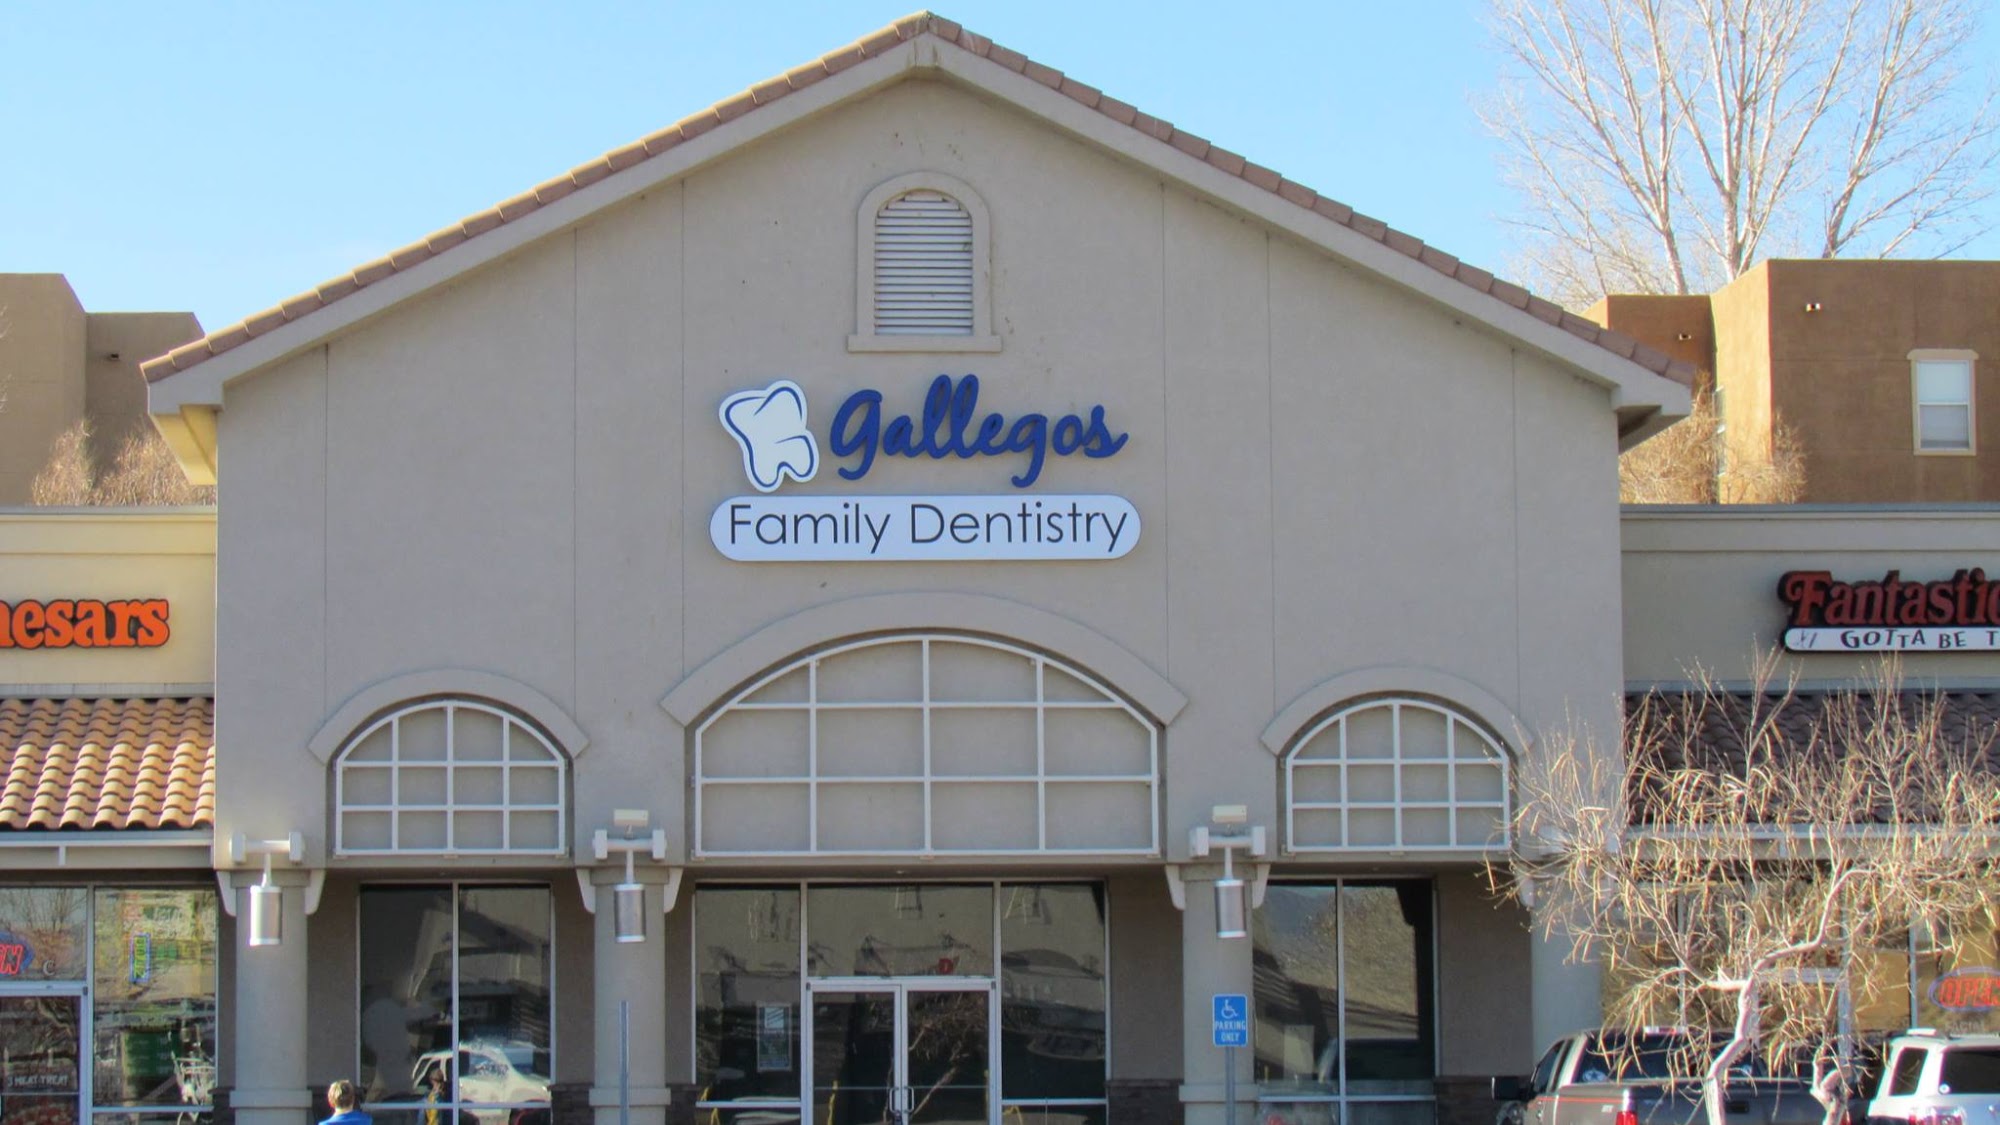 Gallegos Family Dentistry